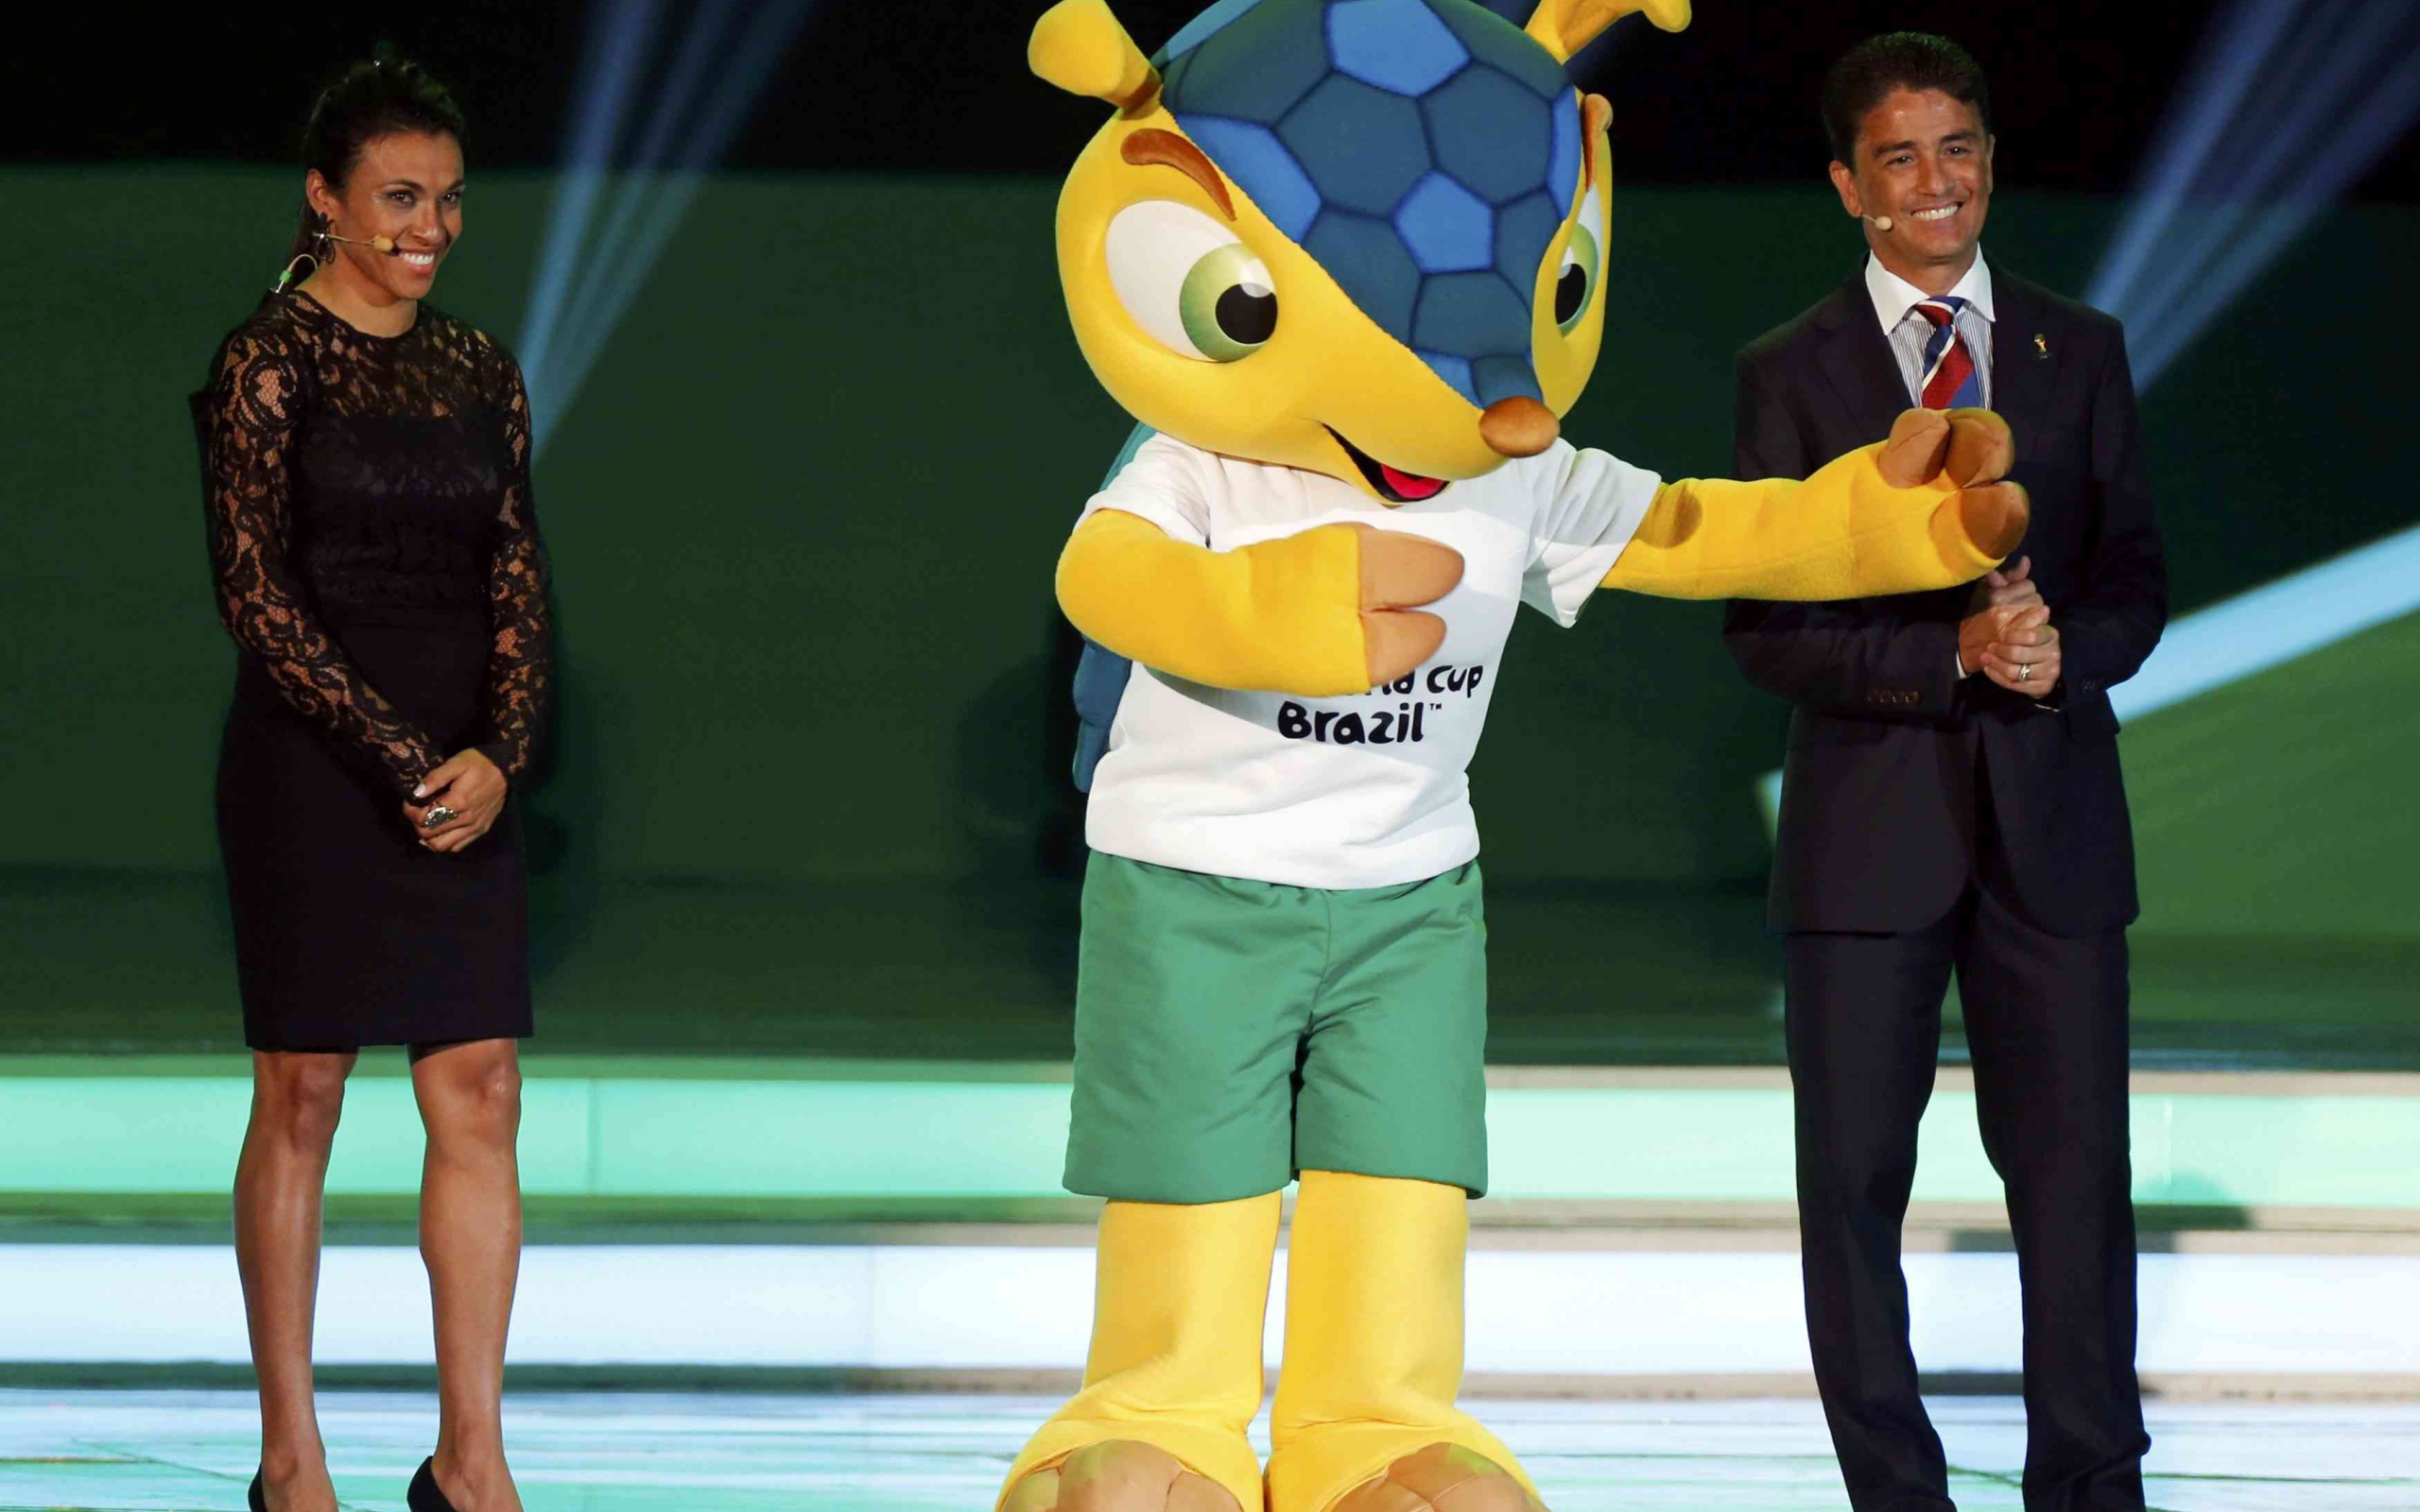 Презентация талисмана Чемпионата Мира по футболу в Бразилии 2014